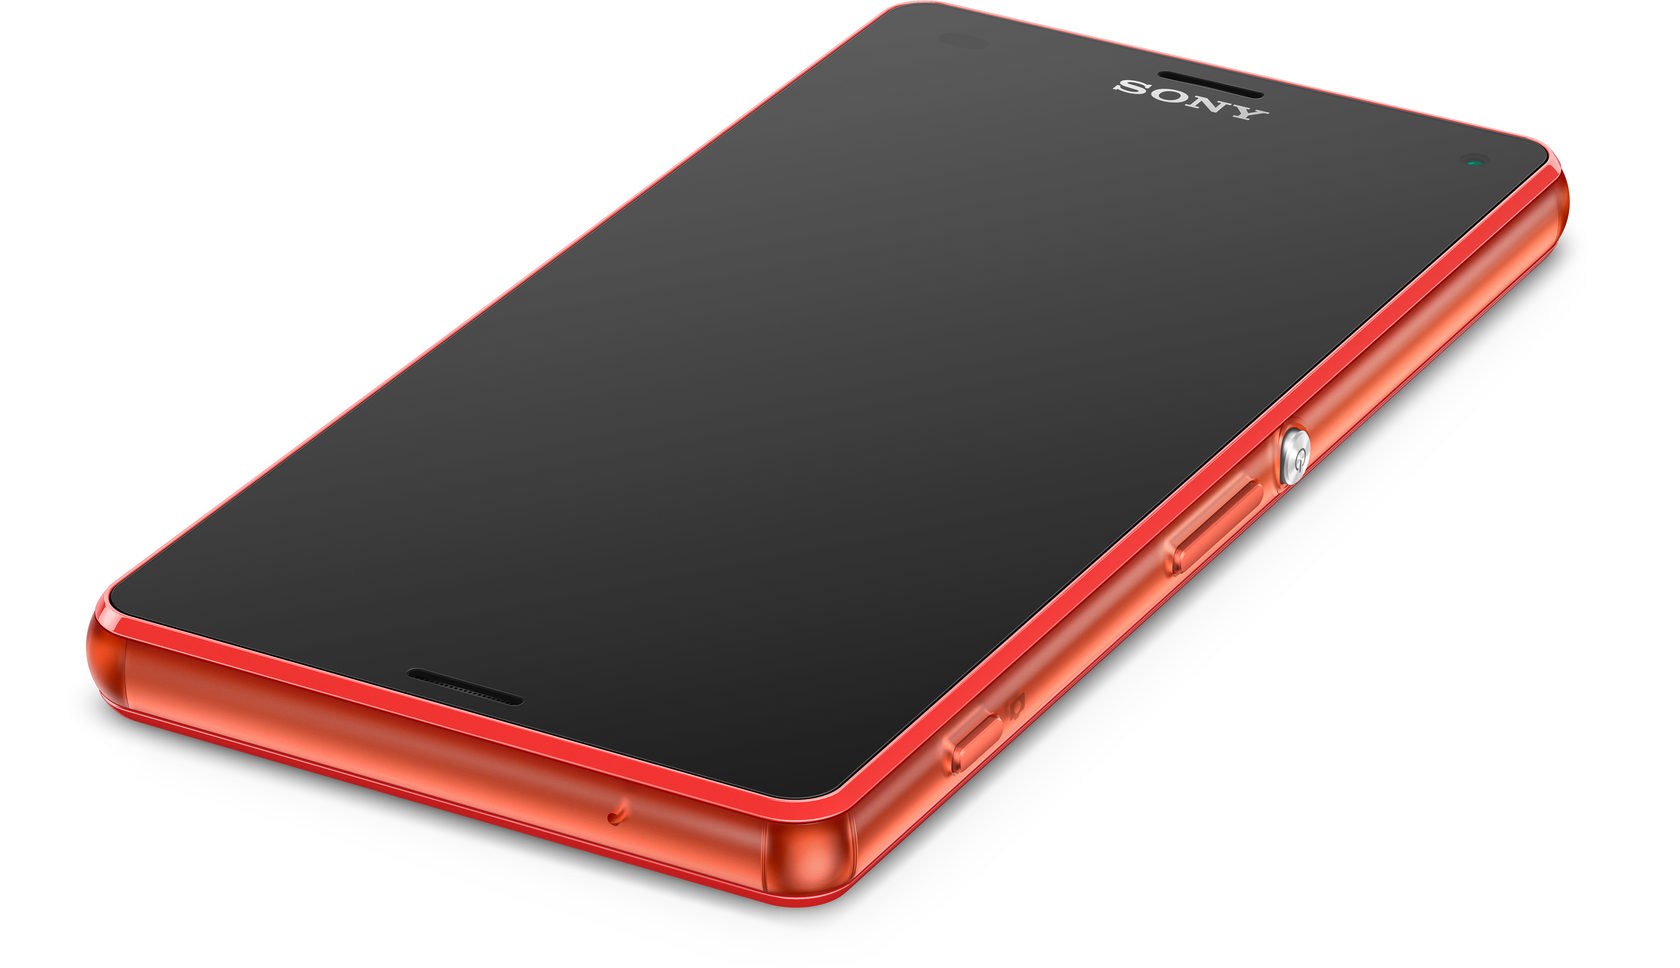 Sony Xperia z3 Compact. Sony Xperia z3 Compact d5803. Sony Xperia z3 Compact Red. Sony Xperia z3 красный. Z3 компакт